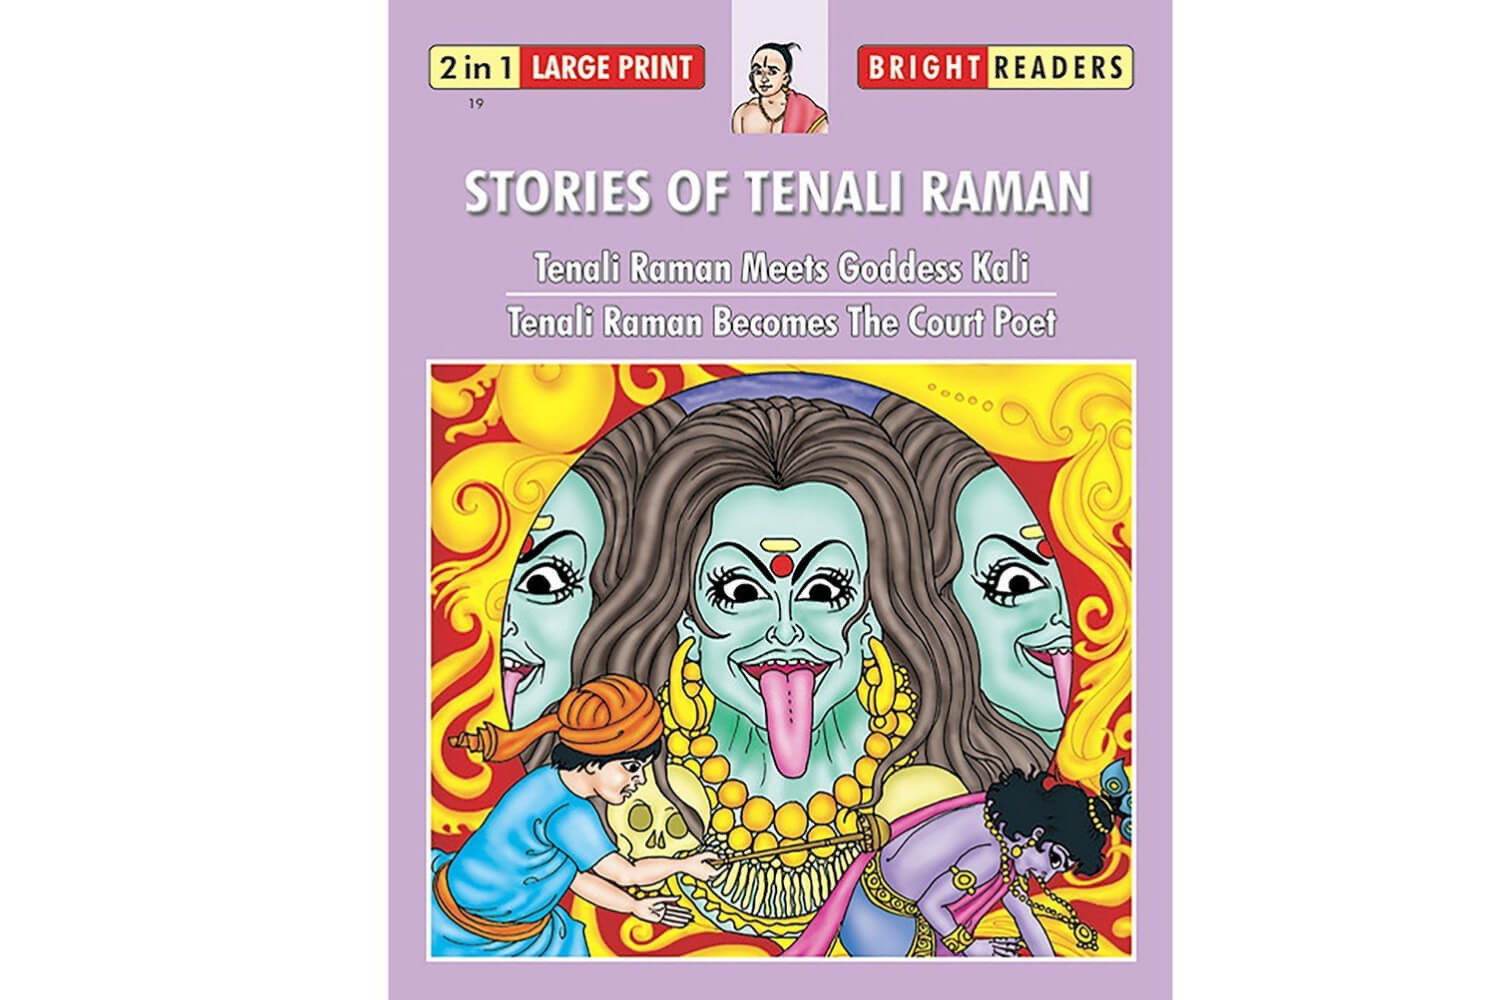 Tenali Rama Gets a Gift From Maa Kaali